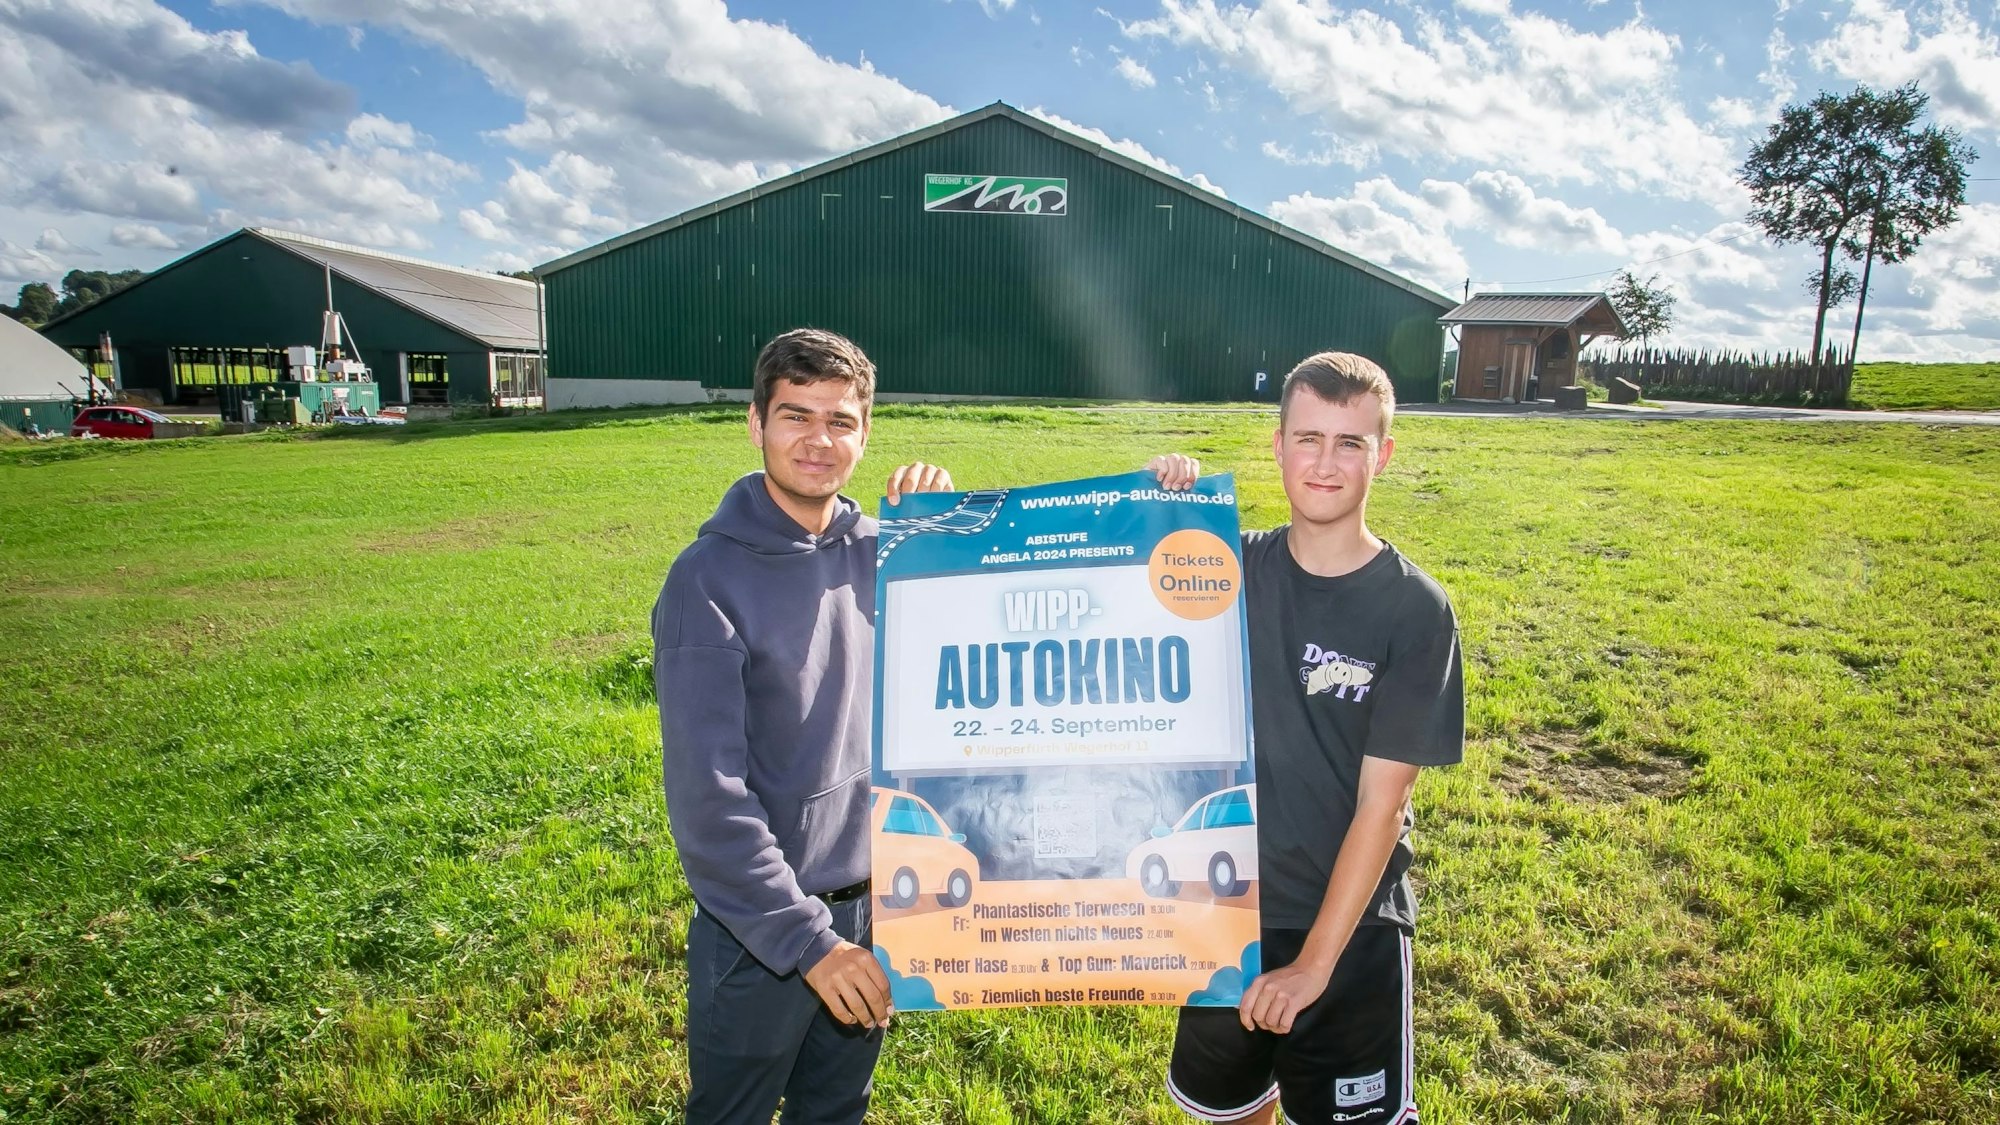 Zwei junge Männer stehen auf einer Wiese und halten ein Veranstaltungsplakat für das erste Wipperfürther Autokino in den Händen. Im Hintergrund ist eine große Scheune eines Landwirtschaftsbetriebs zu sehen.